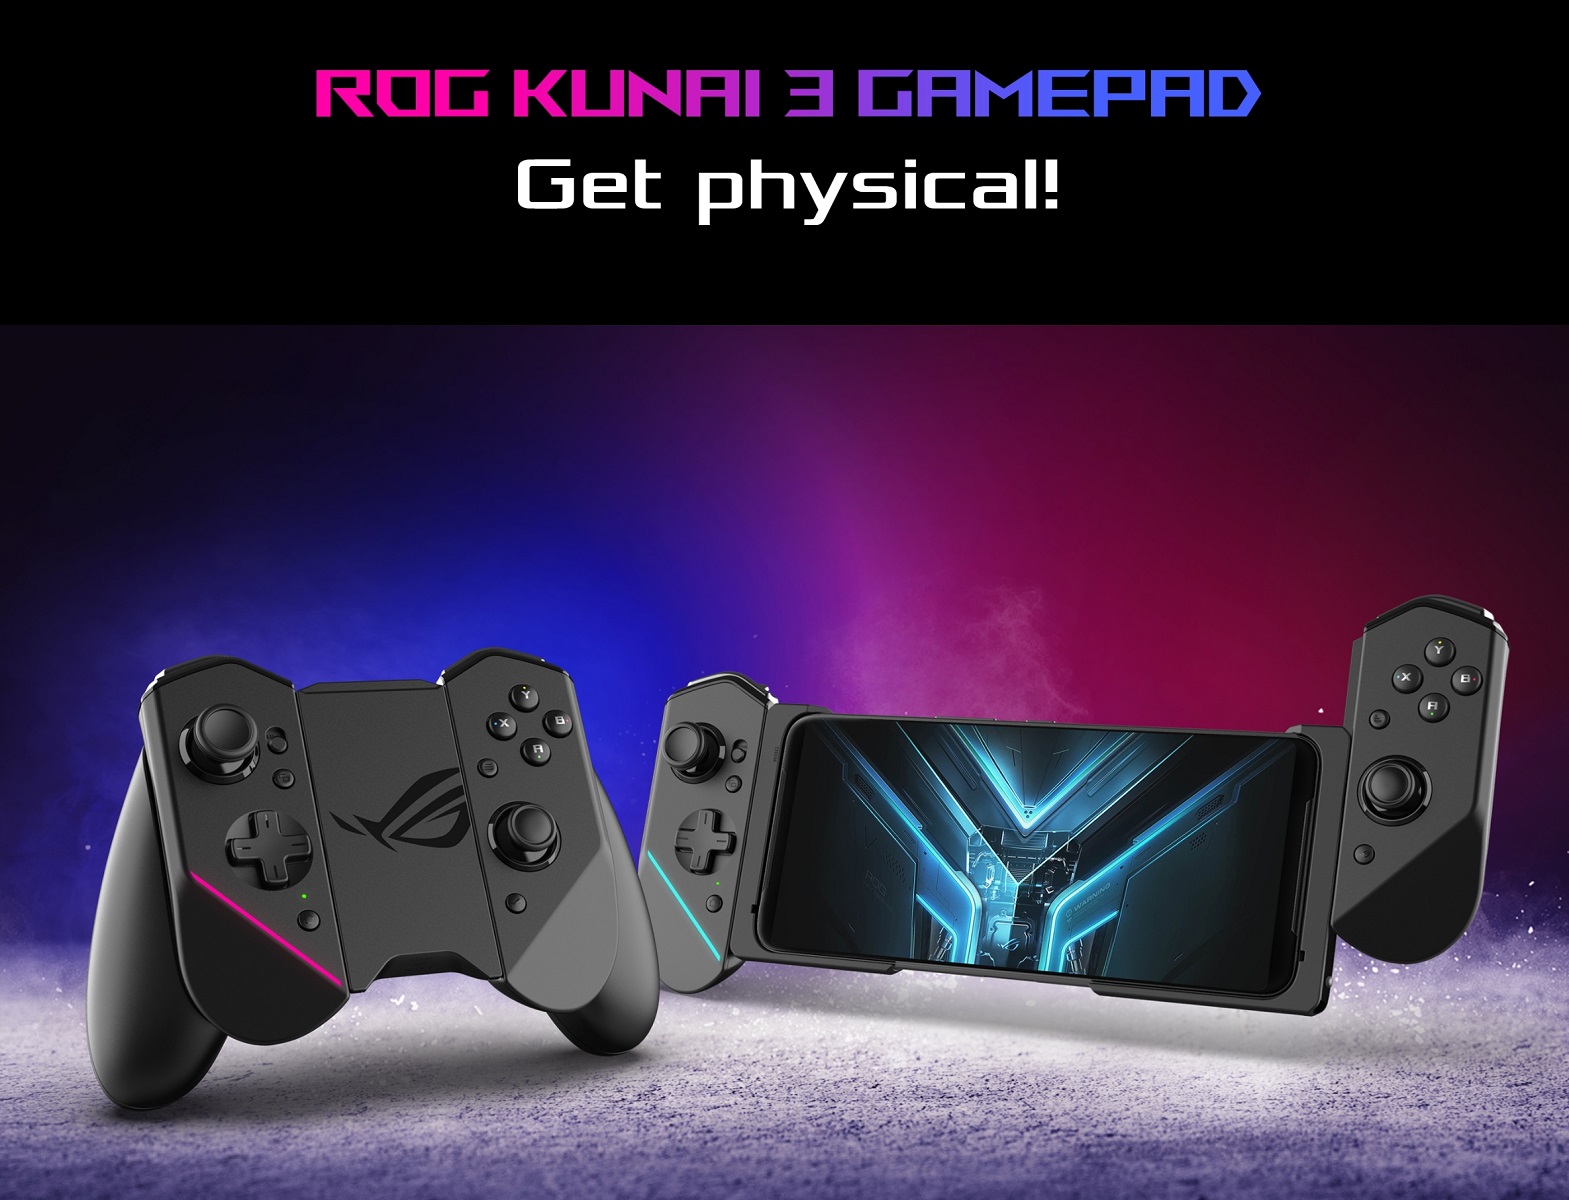 ASUS ROG Kunai 3 Gamepad | ROG Phone 3 Accessories